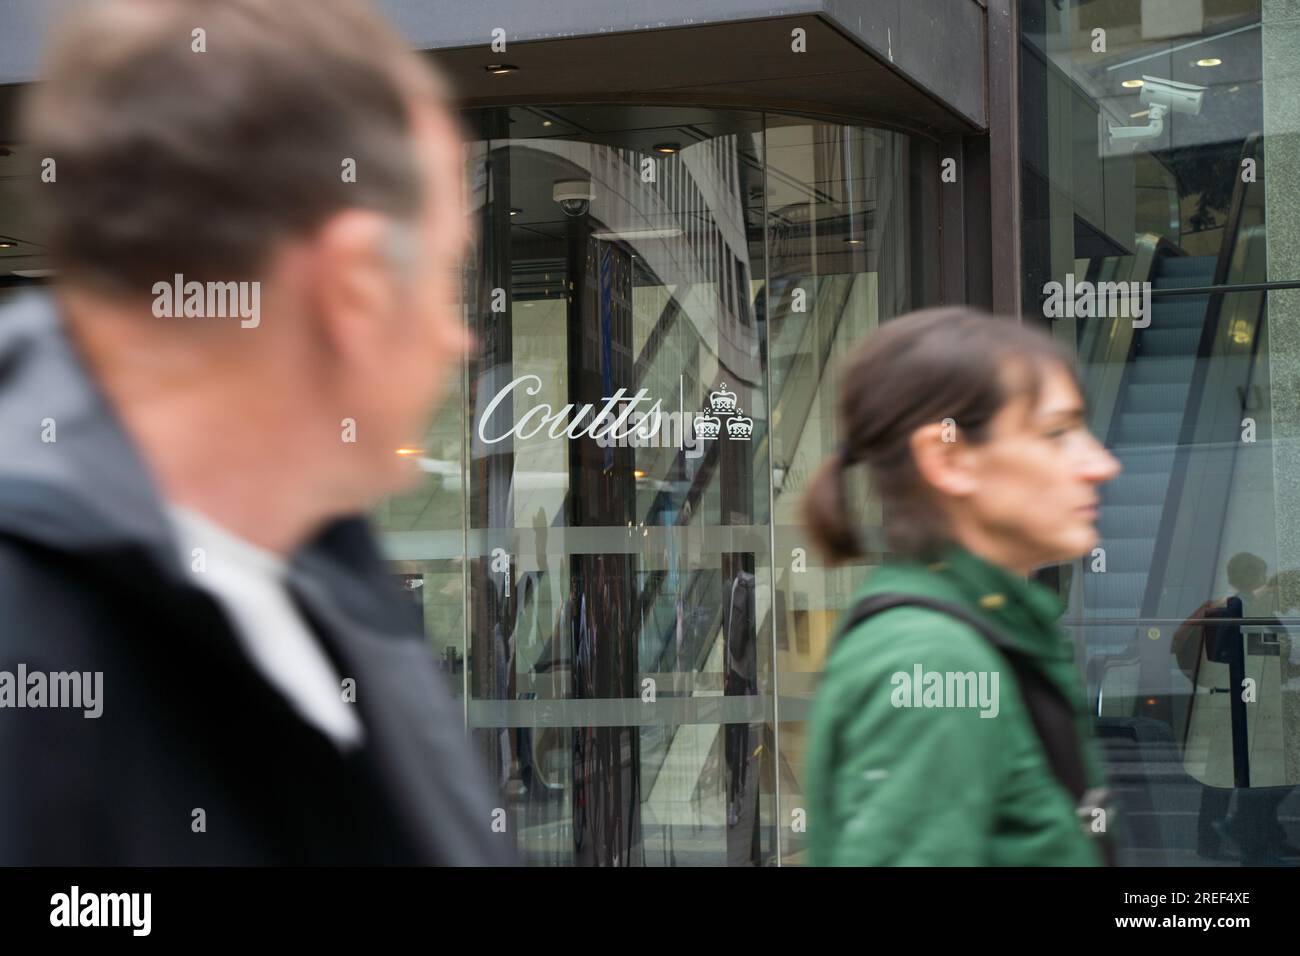 Signe Coutts sur la porte vitrée d'entrée de la banque privée Coutts à Strand London Angleterre Banque D'Images